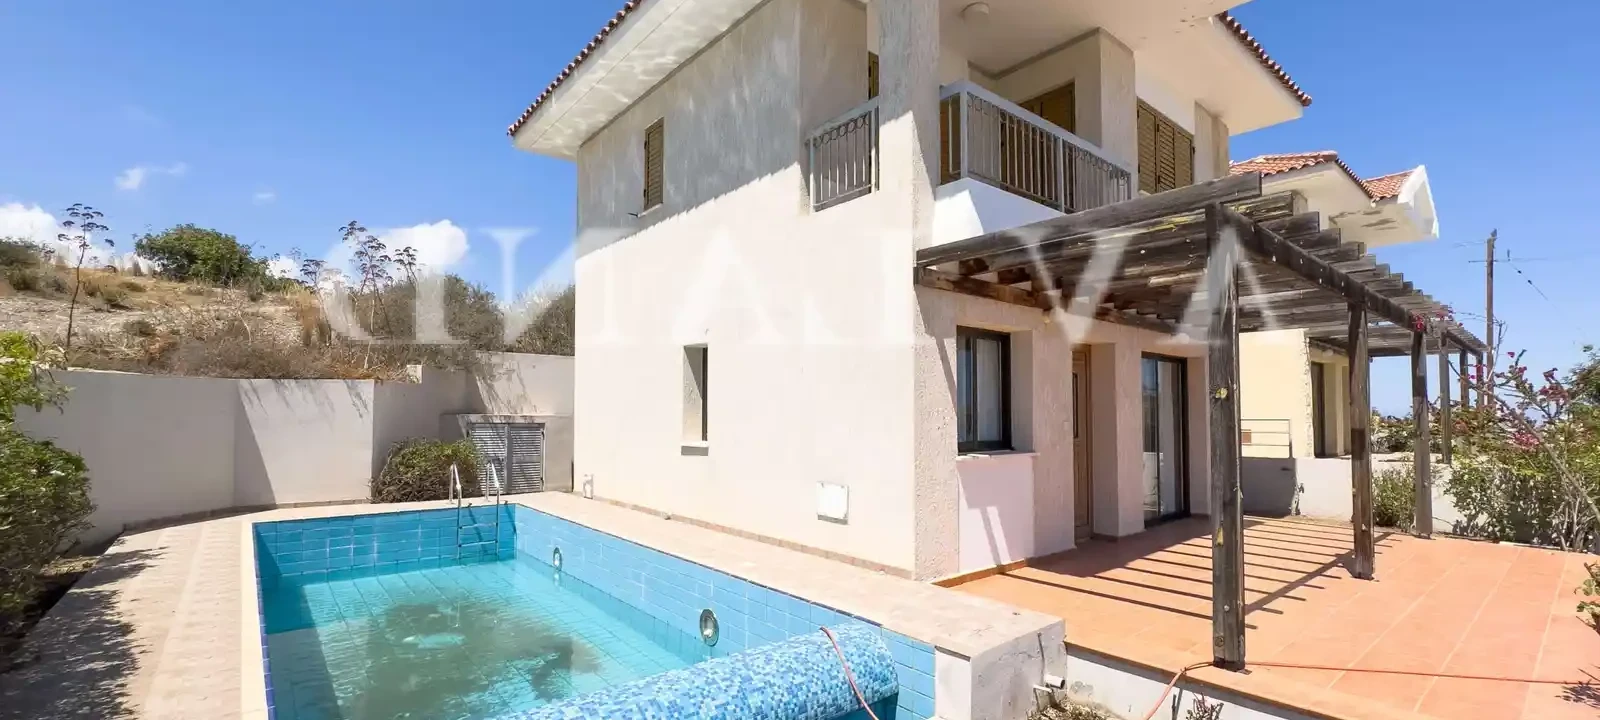 2-bedroom villa to rent €1.200, image 1